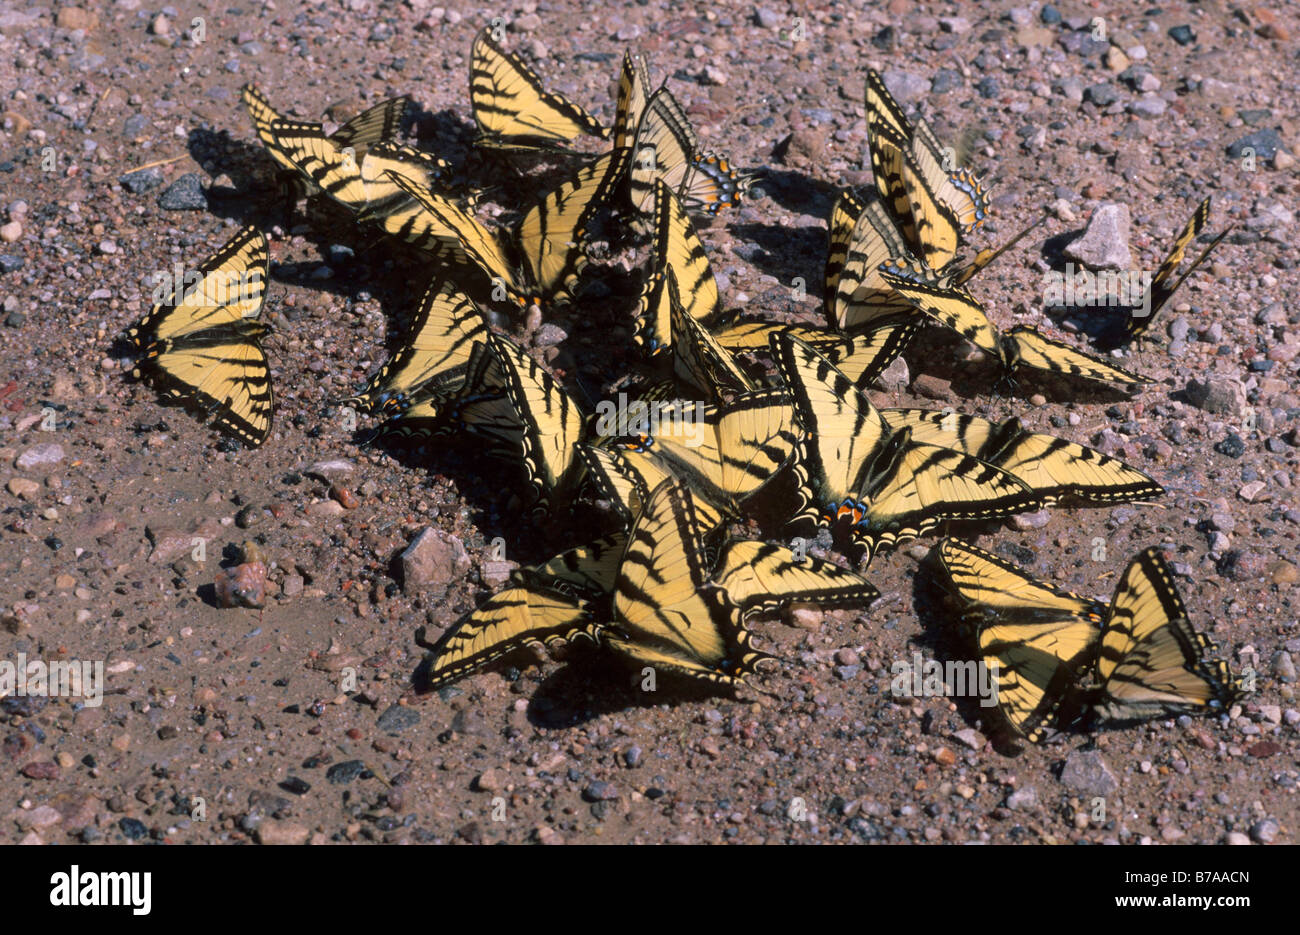 Ancien monde Papilio machaon) lécher les minéraux de la terre, Territoire du Nord-Ouest, au Canada, en Amérique du Nord Banque D'Images